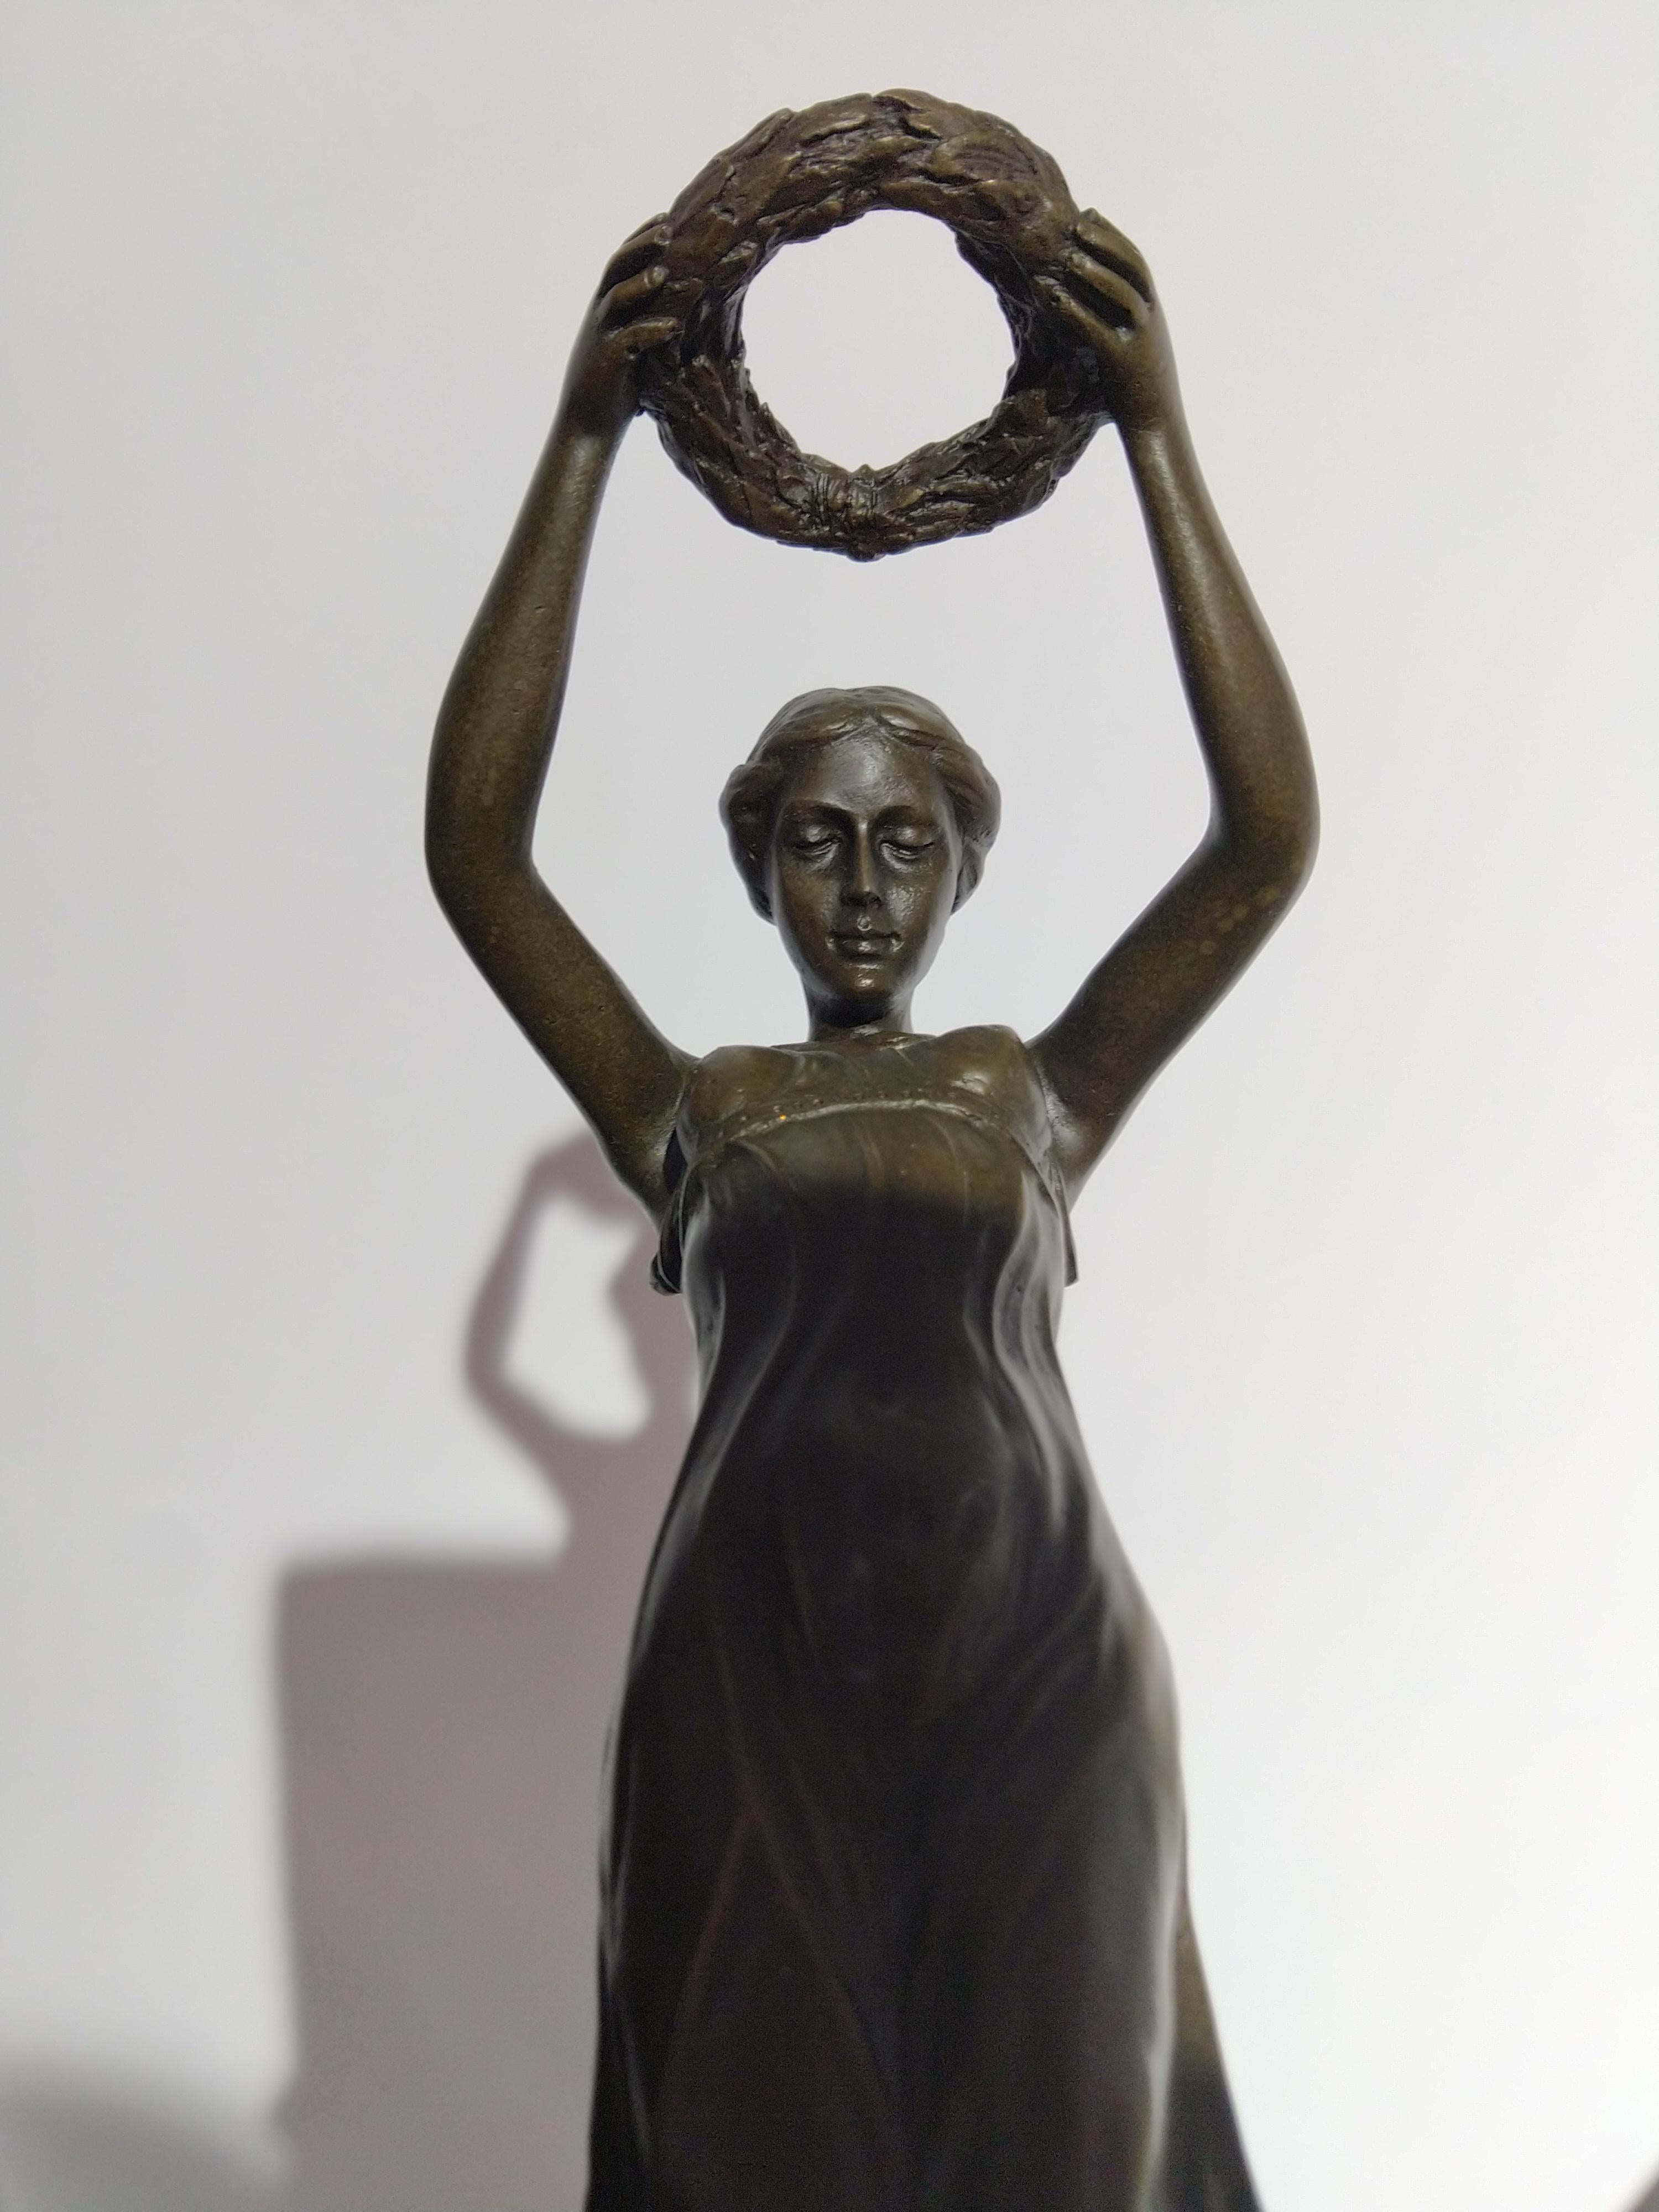 20th Century Art Deco Sculpture Figure Bronze Nymph Daphne By Milo For Sale 2